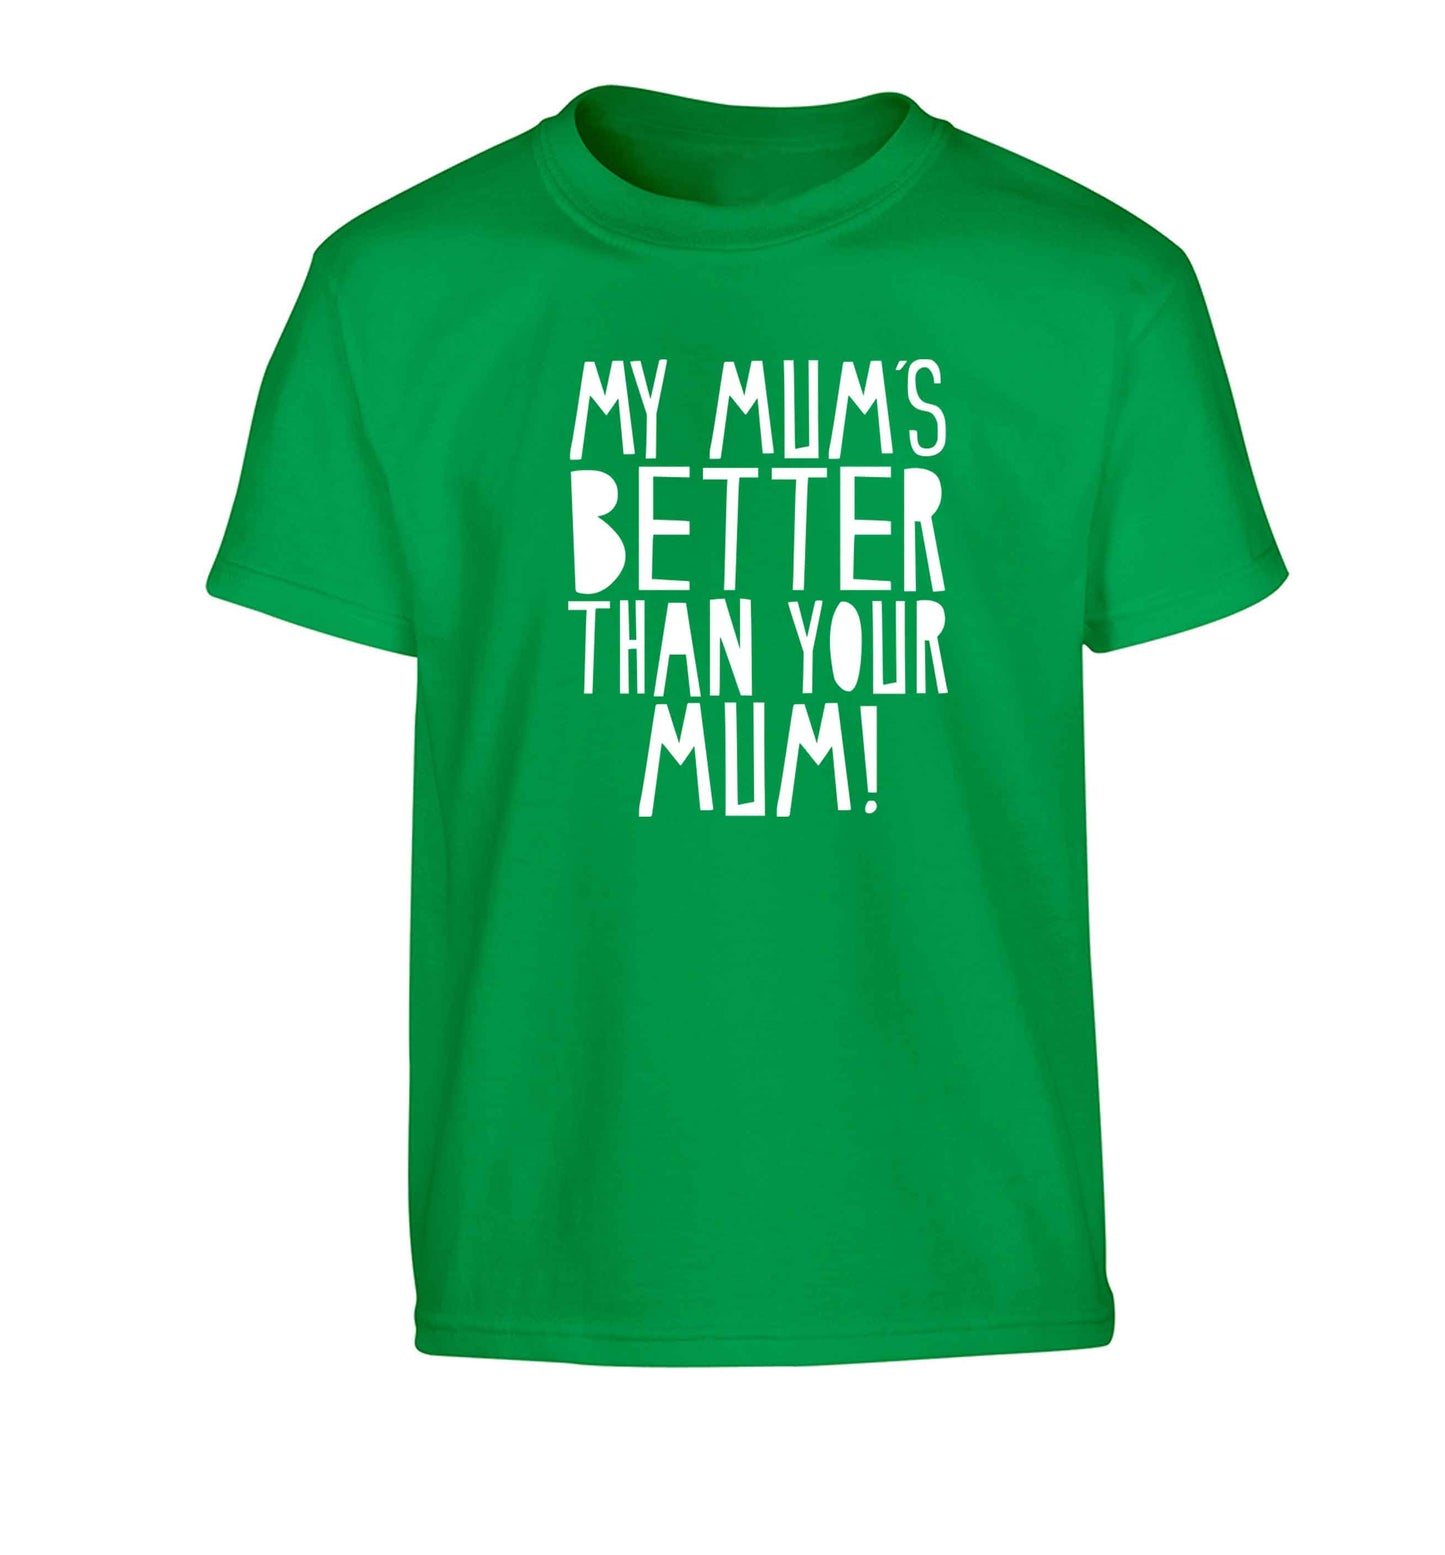 My mum's better than your mum Children's green Tshirt 12-13 Years